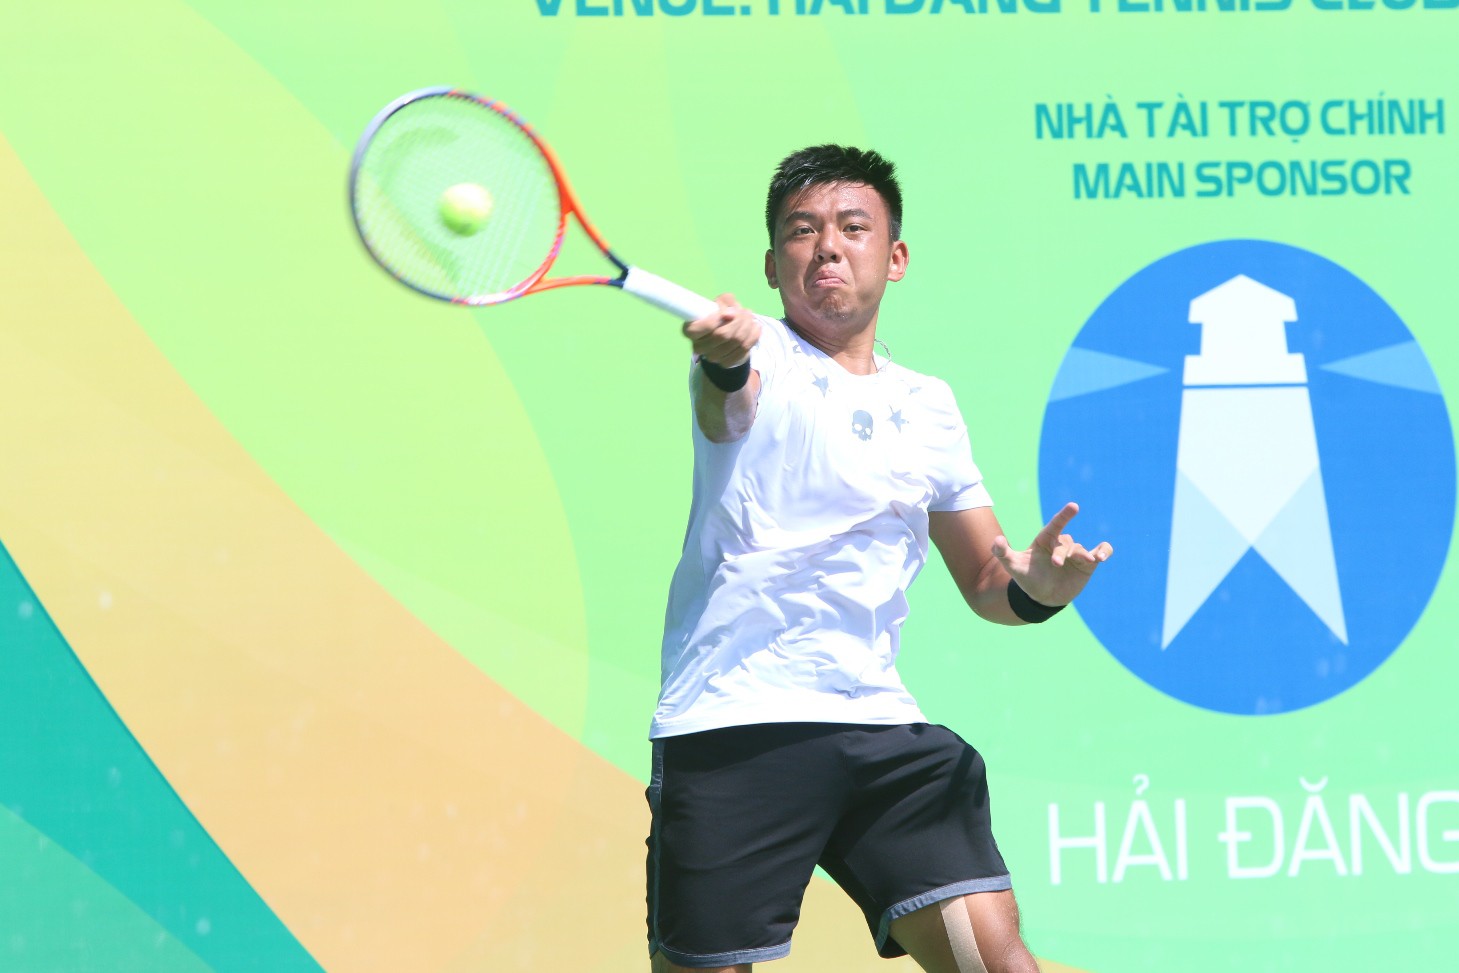 Giải tennis VTF Pro Tour 200 -1: Hoàng Nam không tham dự, cơ hội cho phần còn lại